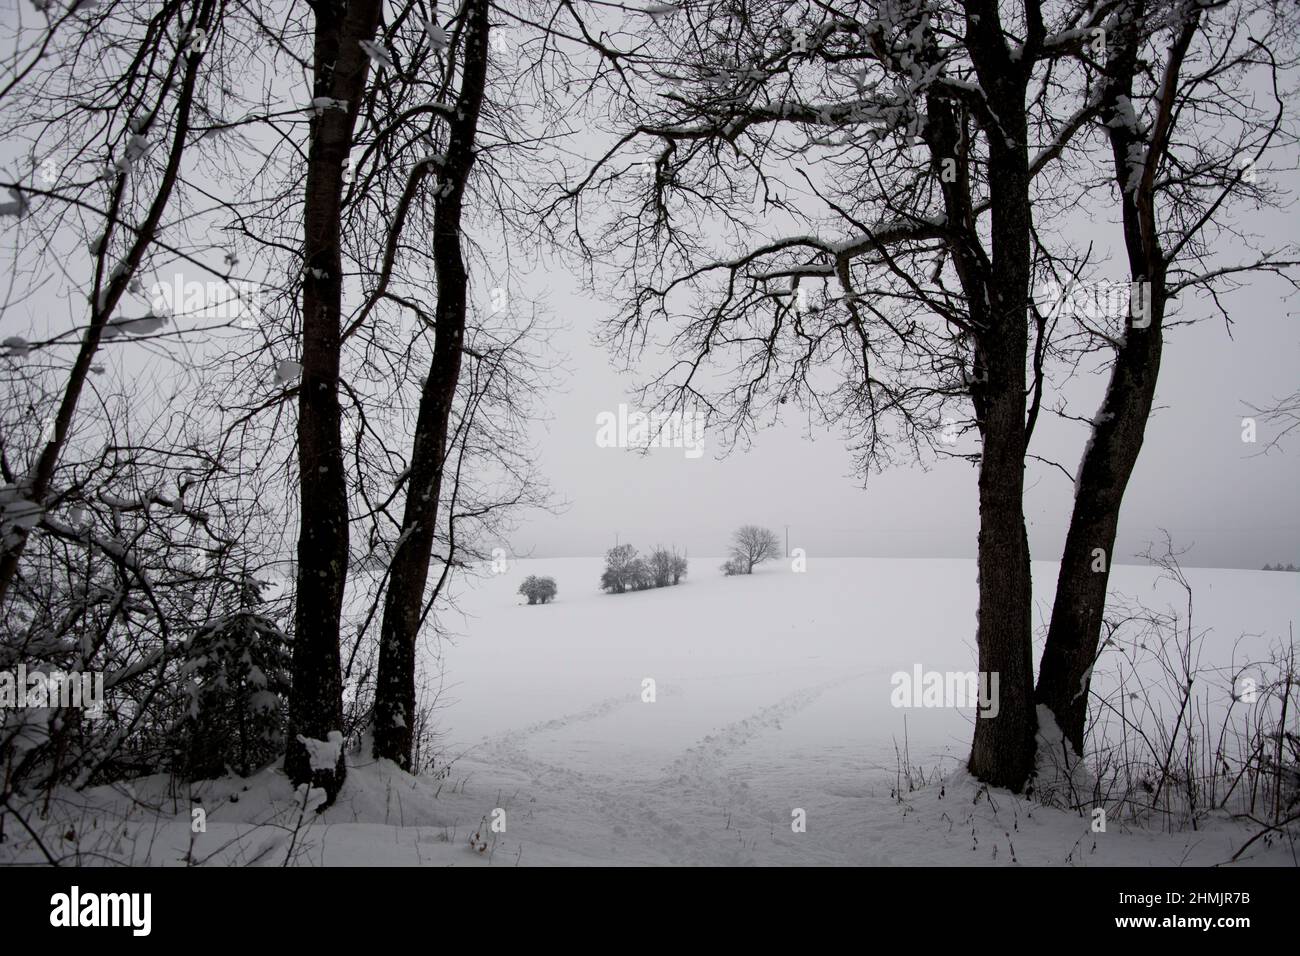 Fussspuren im Schnee führen in die offene Kulturlandschaft Stock Photo